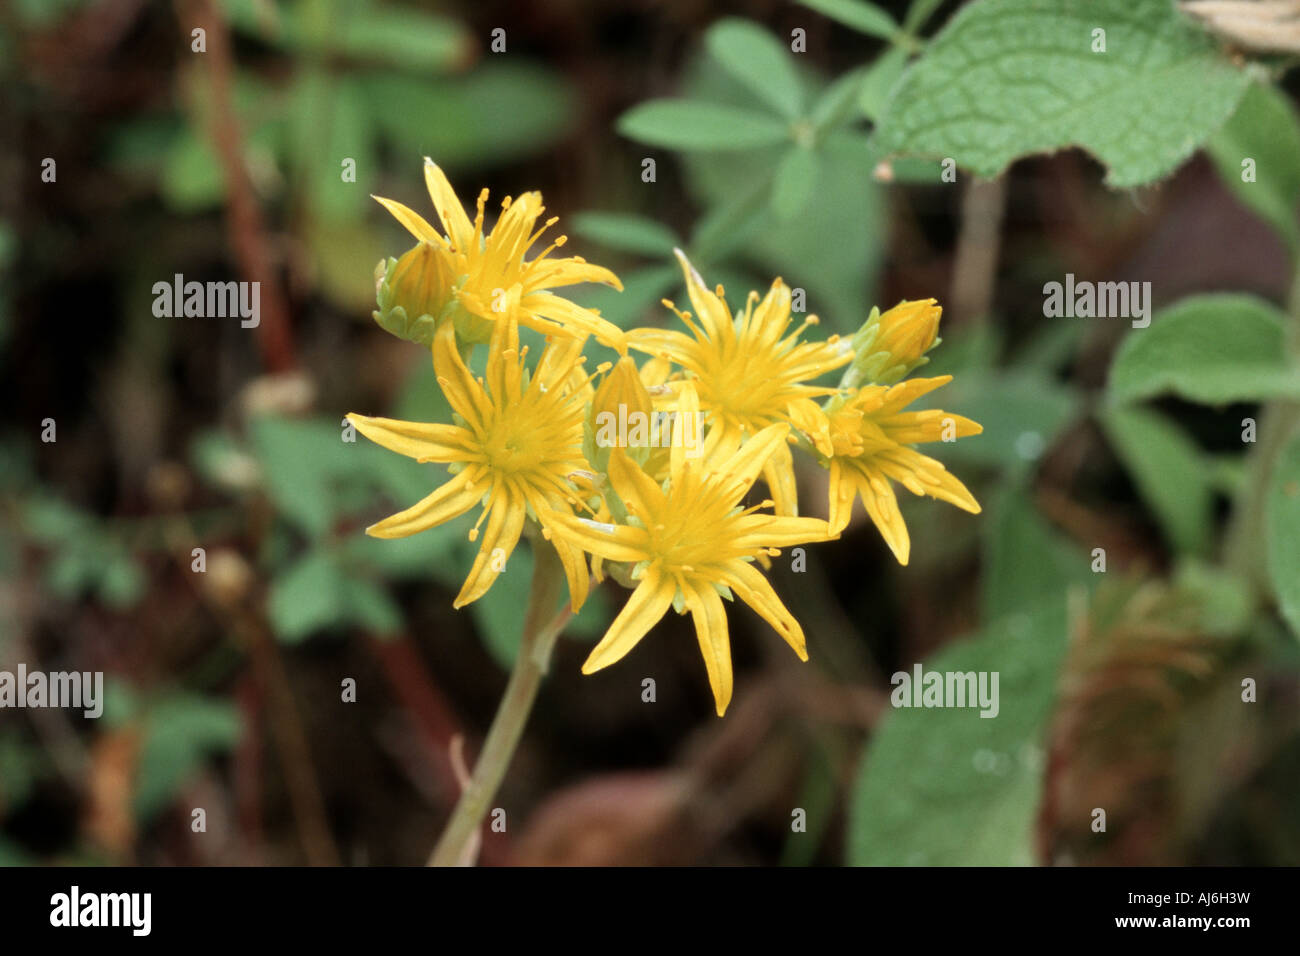 Sedum amplexicaule ssp. tenuifolium (Sedum amplexicaule ssp. tenuifolium), blooming, Greece Stock Photo